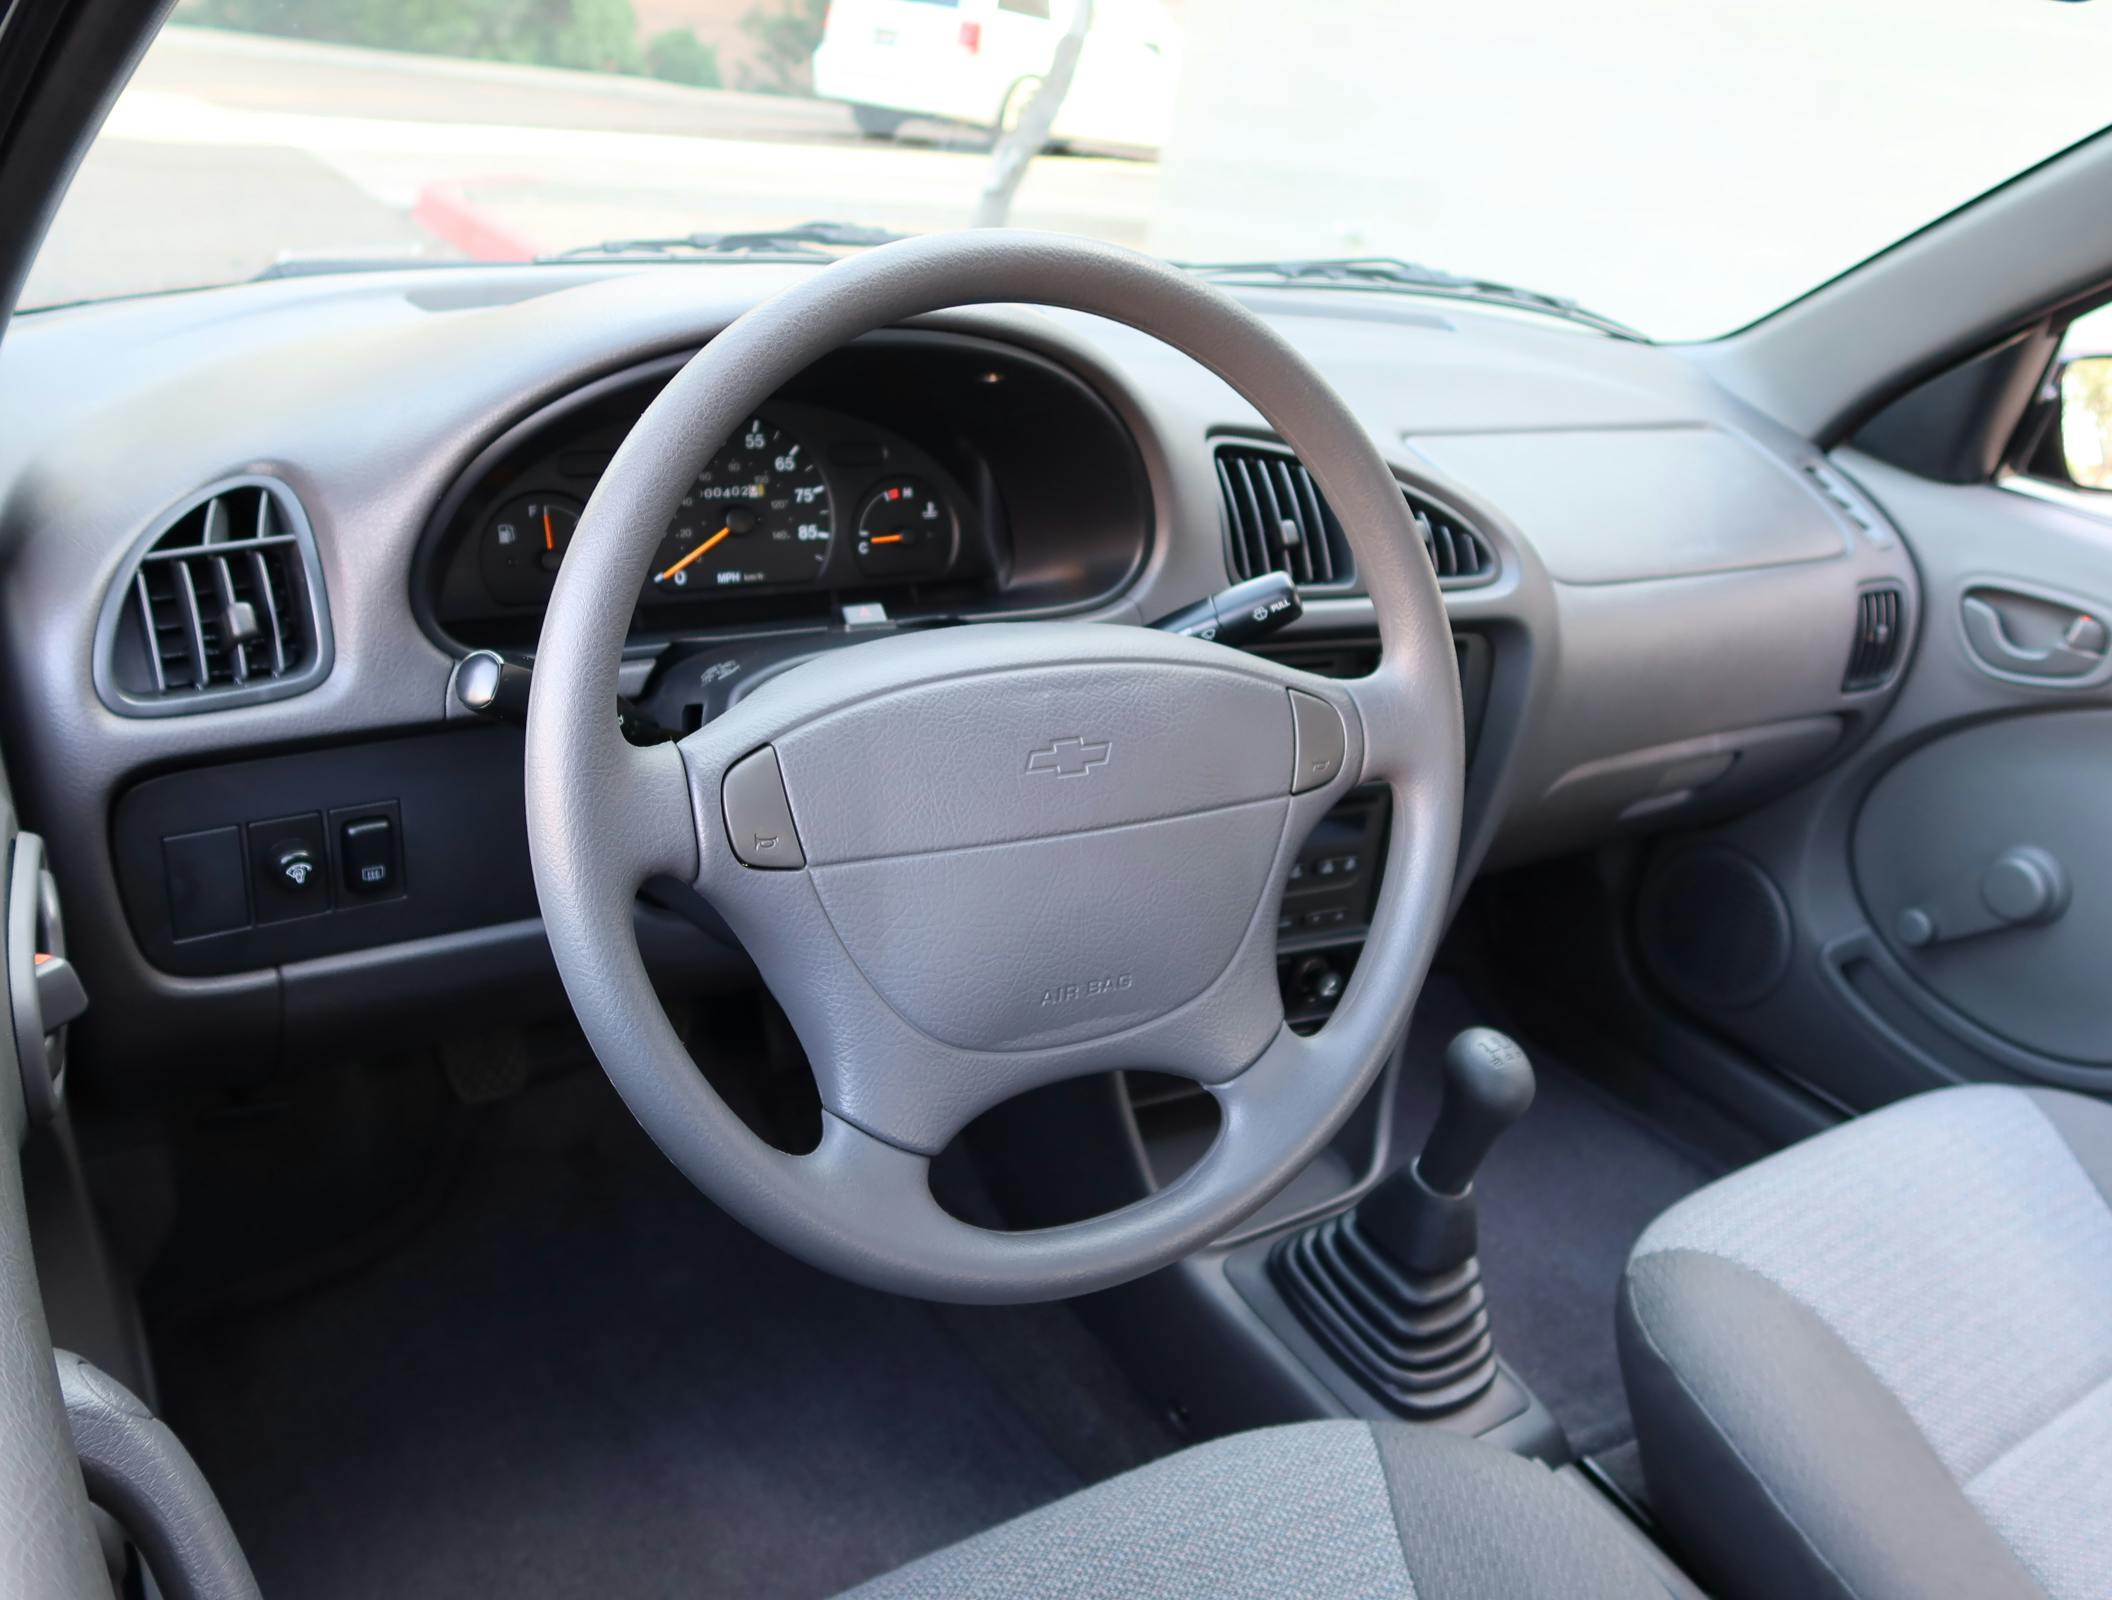 2000 Chevrolet Metro Coupe 5-Speed interior steering wheel